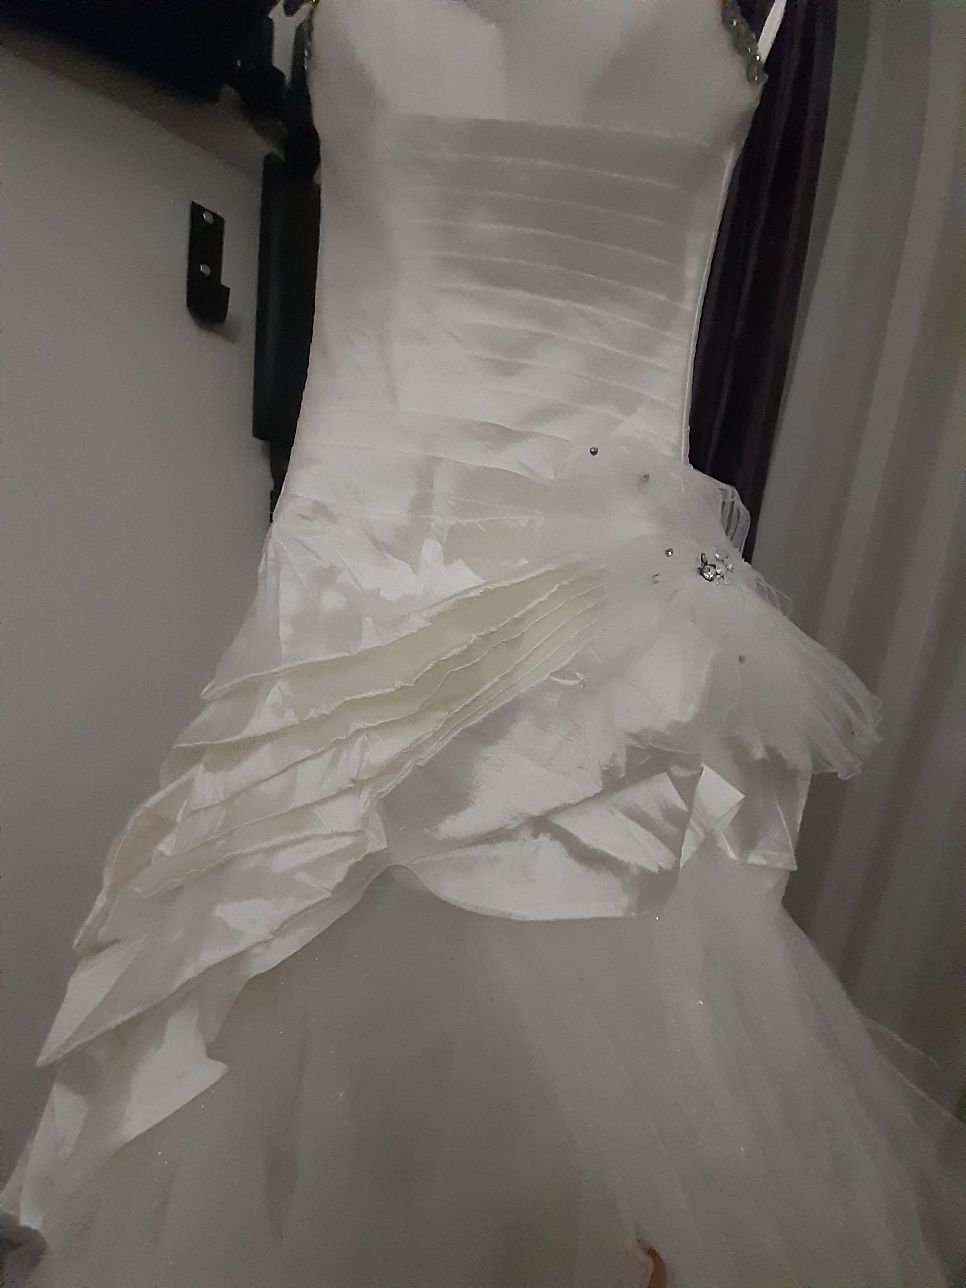 Свадебное платье шикарное